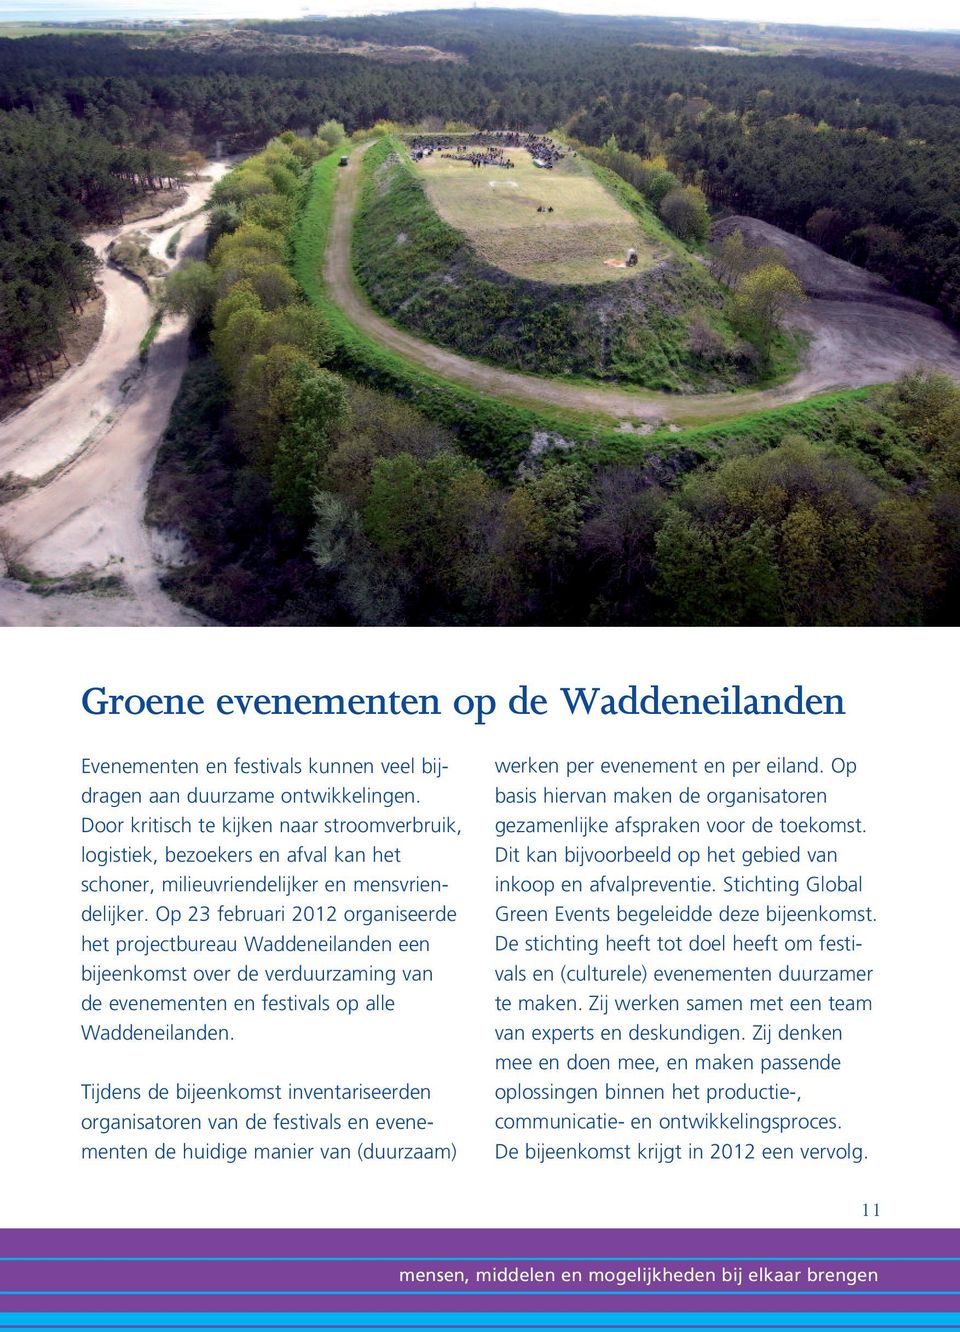 Op 23 februari 2012 organiseerde het projectbureau Waddeneilanden een bijeenkomst over de verduurzaming van de evenementen en festivals op alle Waddeneilanden.